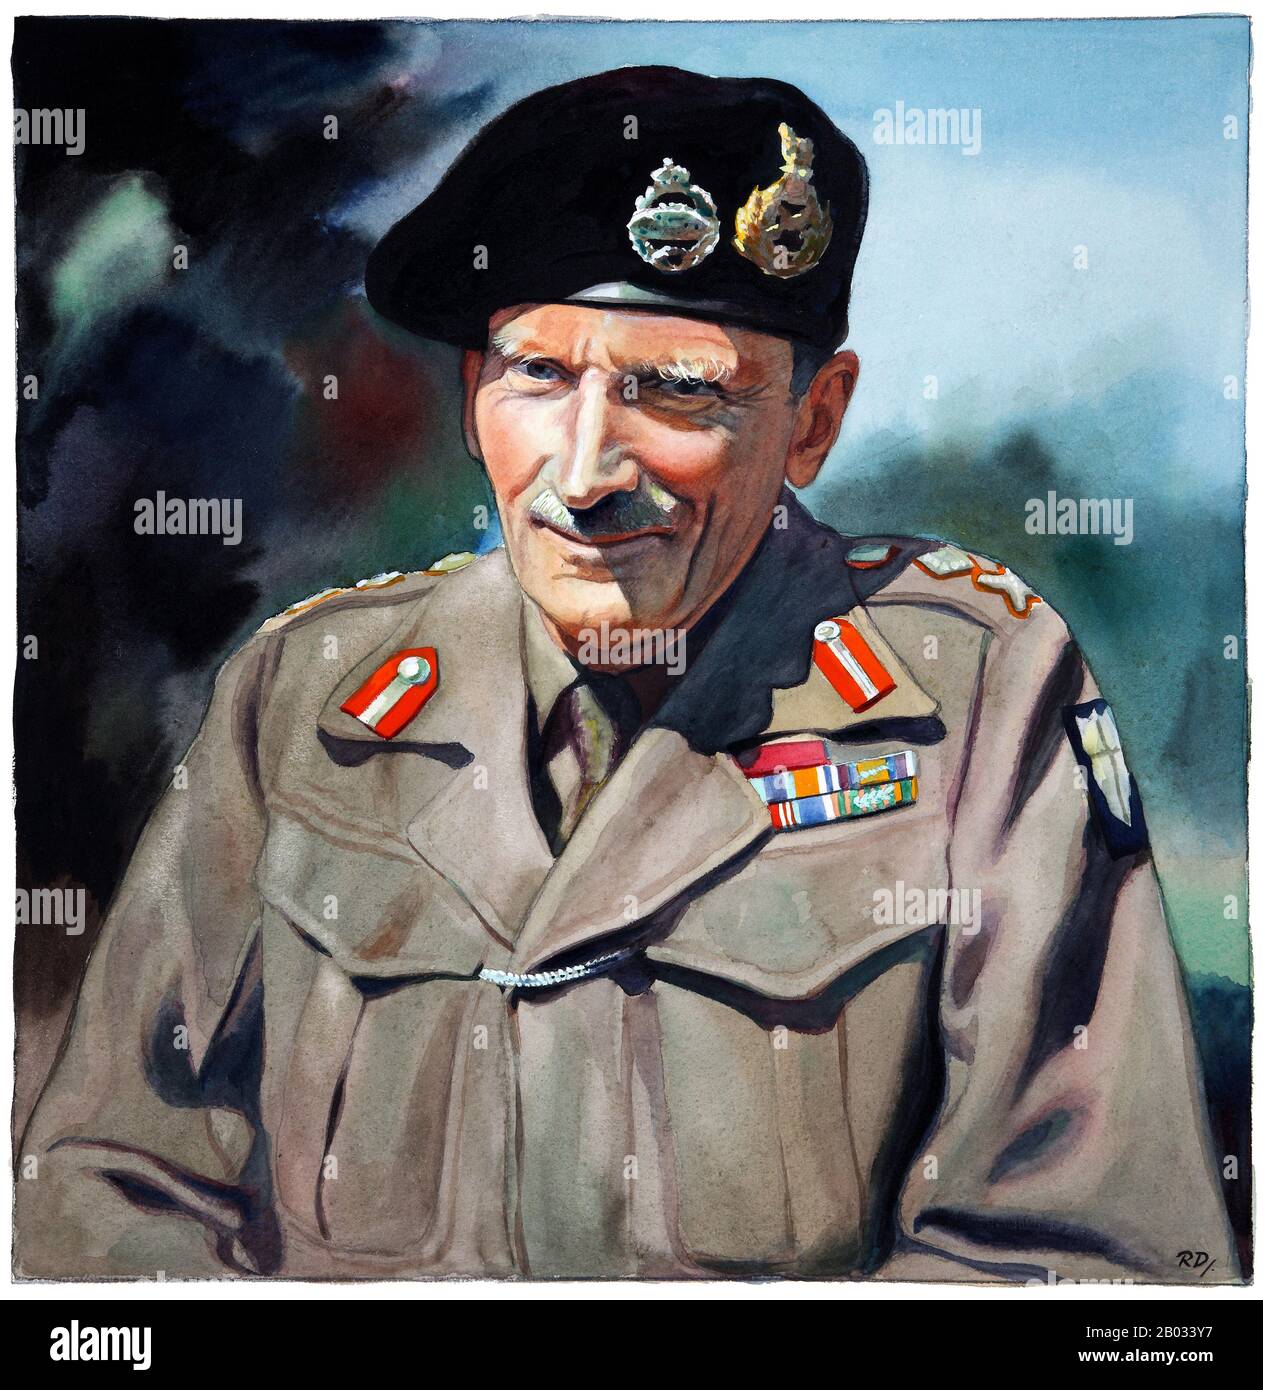 Die Zweite Schlacht von El Alamein (23. Oktober bis 11. November 1942) war eine große Schlacht des Zweiten Weltkriegs, die in der Nähe des ägyptischen Bahnhalters El Alamein stattfand. Mit den Alliierten als Sieger markierte sie einen wichtigen Wendepunkt in der Kampagne der westlichen Wüste des Zweiten Weltkriegs. Feldmarschall Bernard Law Montgomery, 1st Viscount Montgomery of Alamein, KG, GCB, DSO, PC (17. November 1887 - 24. März 1976), Spitzname 'Monty' und 'Sparan General', war ein leitender Offizier der britischen Armee und Sieger bei El-Alamein. Stockfoto